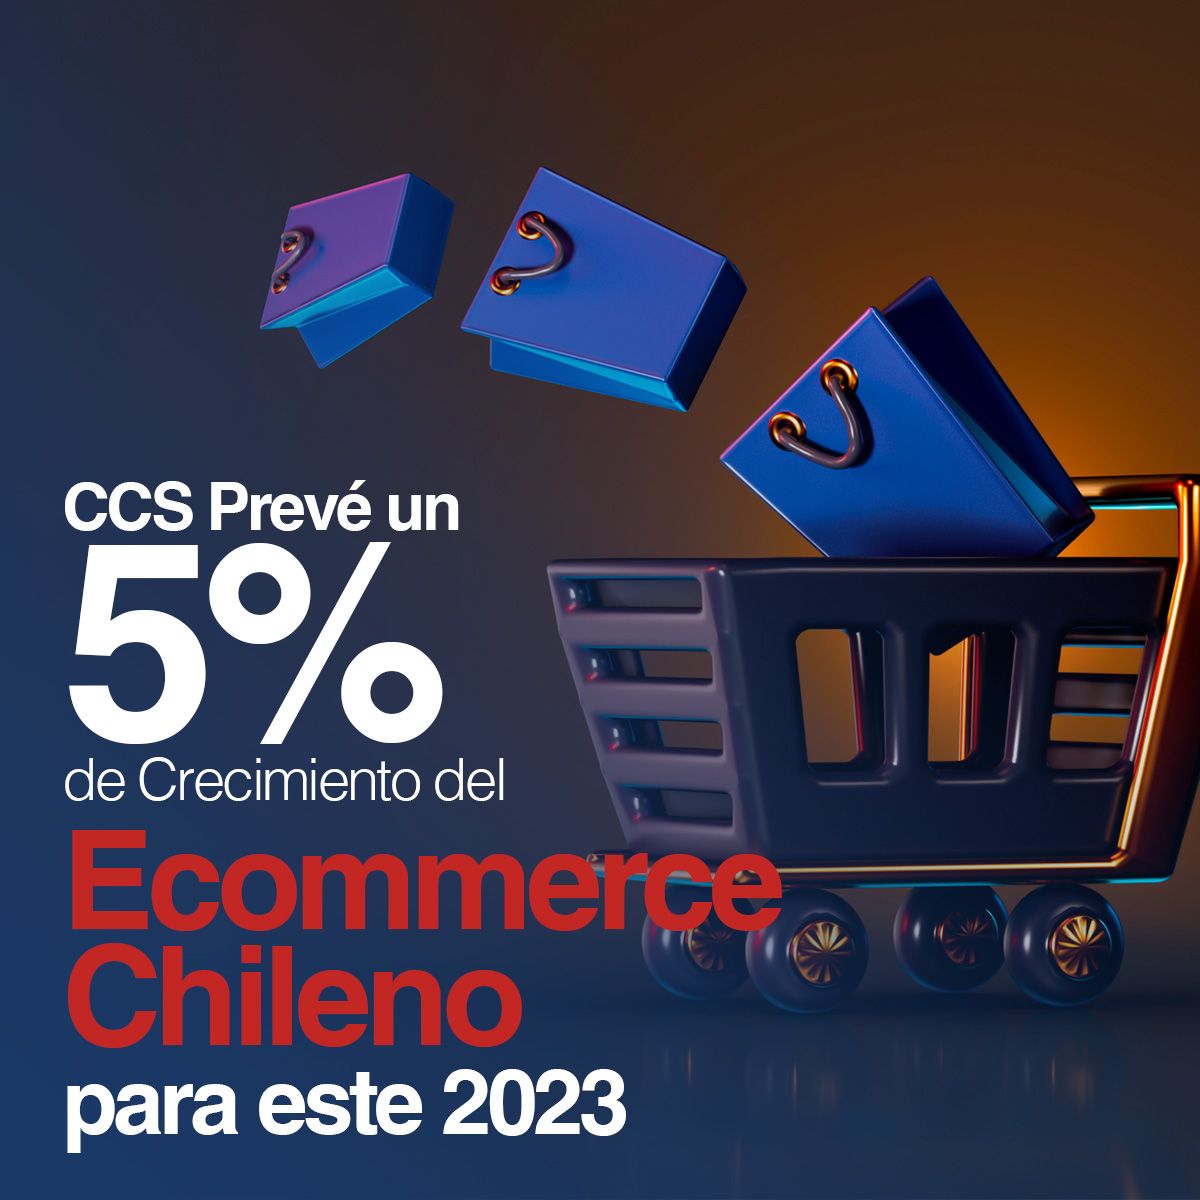 CCS Prevé un 5% de Crecimiento del Ecommerce Chileno para este 2023